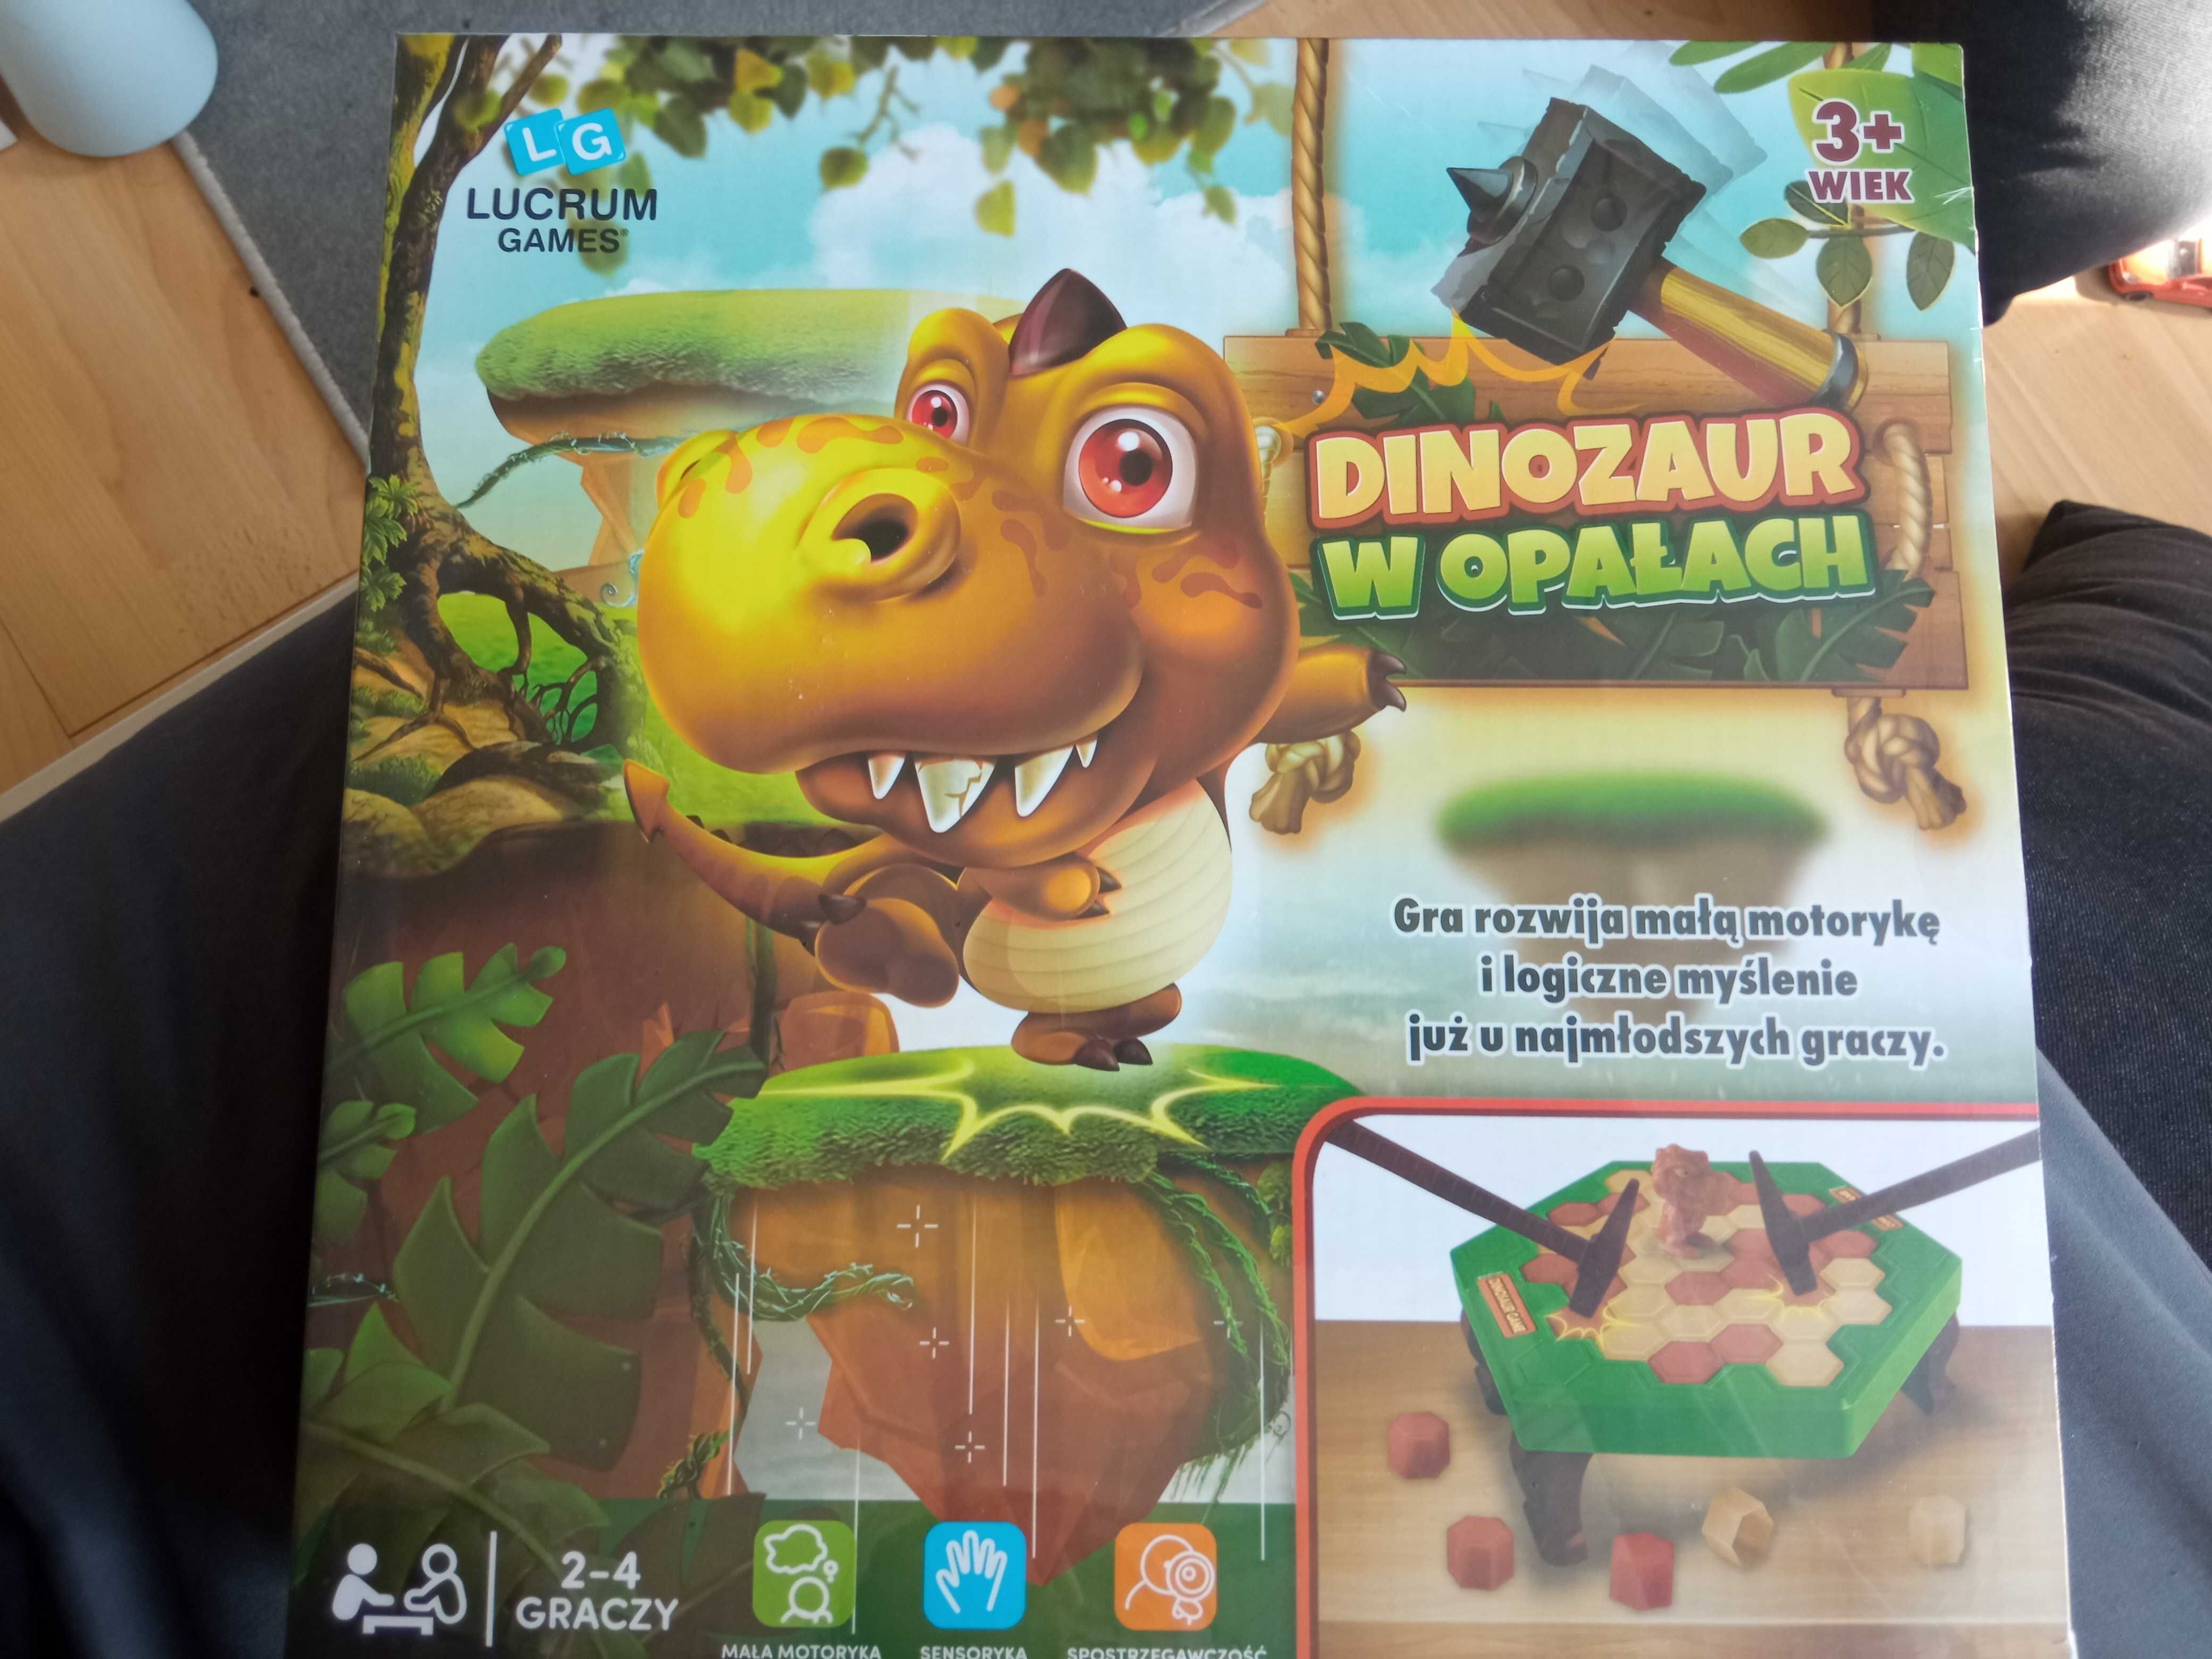 Dinozaur w opałach Gra dla dzieci nowa LG lucrum